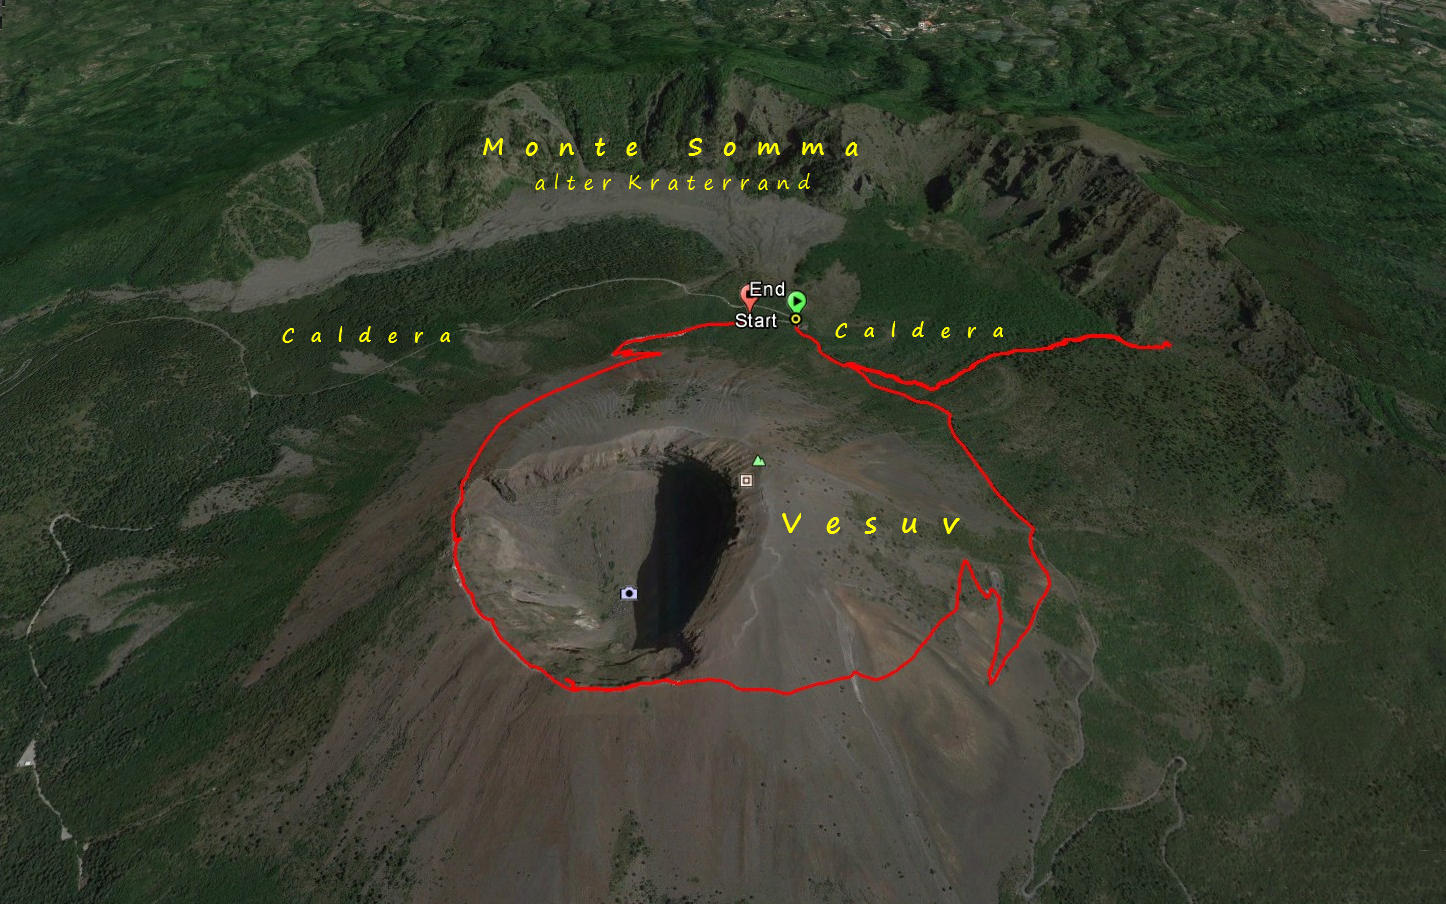 Unsere Wanderroute im Vesuv Nationalpark
Der Vesuv ist ein Ringvulkan, der aus dem Monte Somma, besteht. Innerhalb  des Monte Somma befindet sich ein kleinerer Vulkankegel, der Vesuv, 1.281 m hoch, der noch aktiv ist